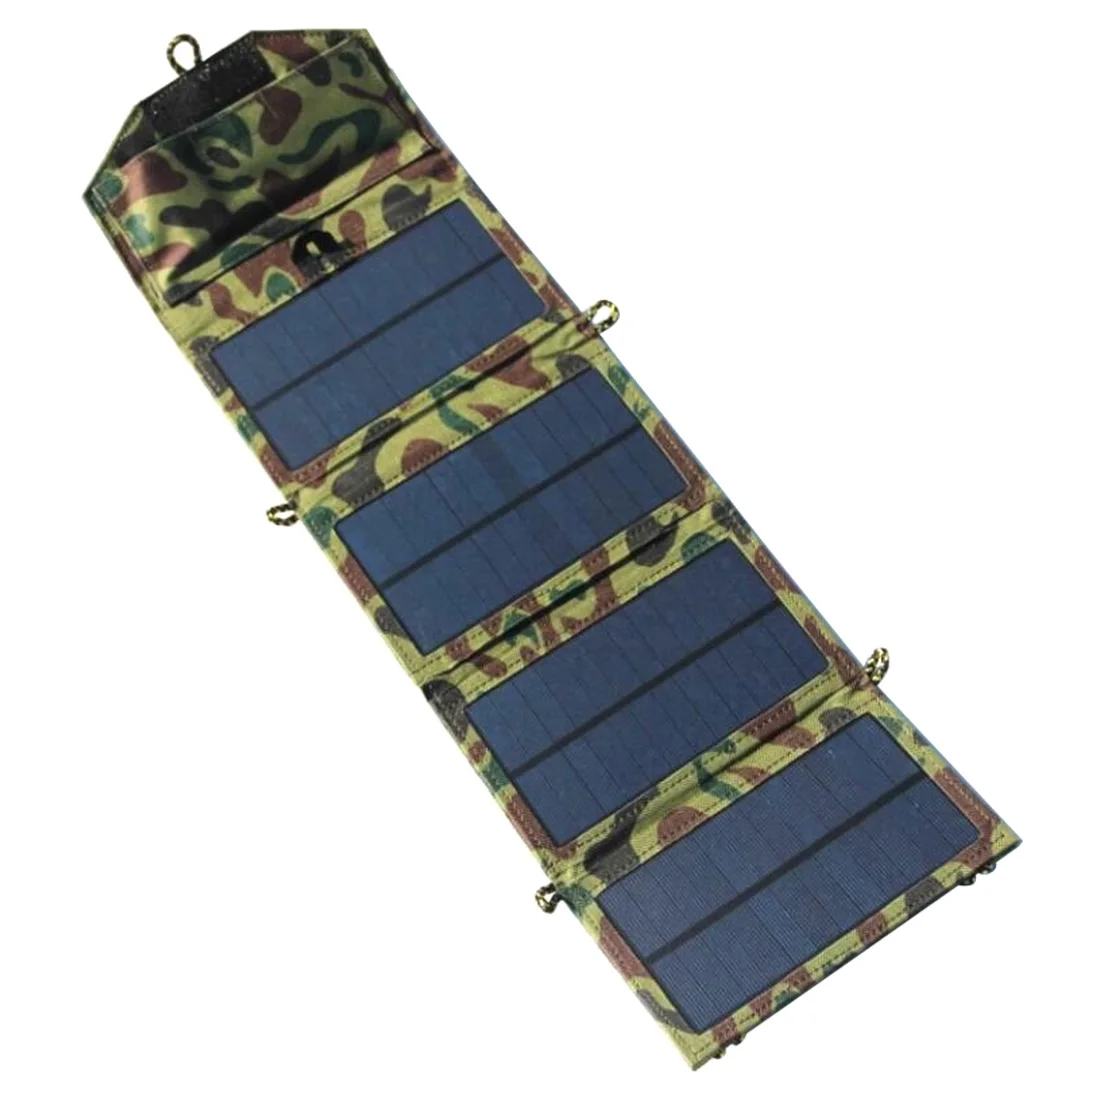 7W 5V портативное солнечное зарядное устройство для мобильного телефона iPhone Складная моно солнечная панель+ Складная солнечная USB зарядное устройство - Цвет: Зеленый камуфляж